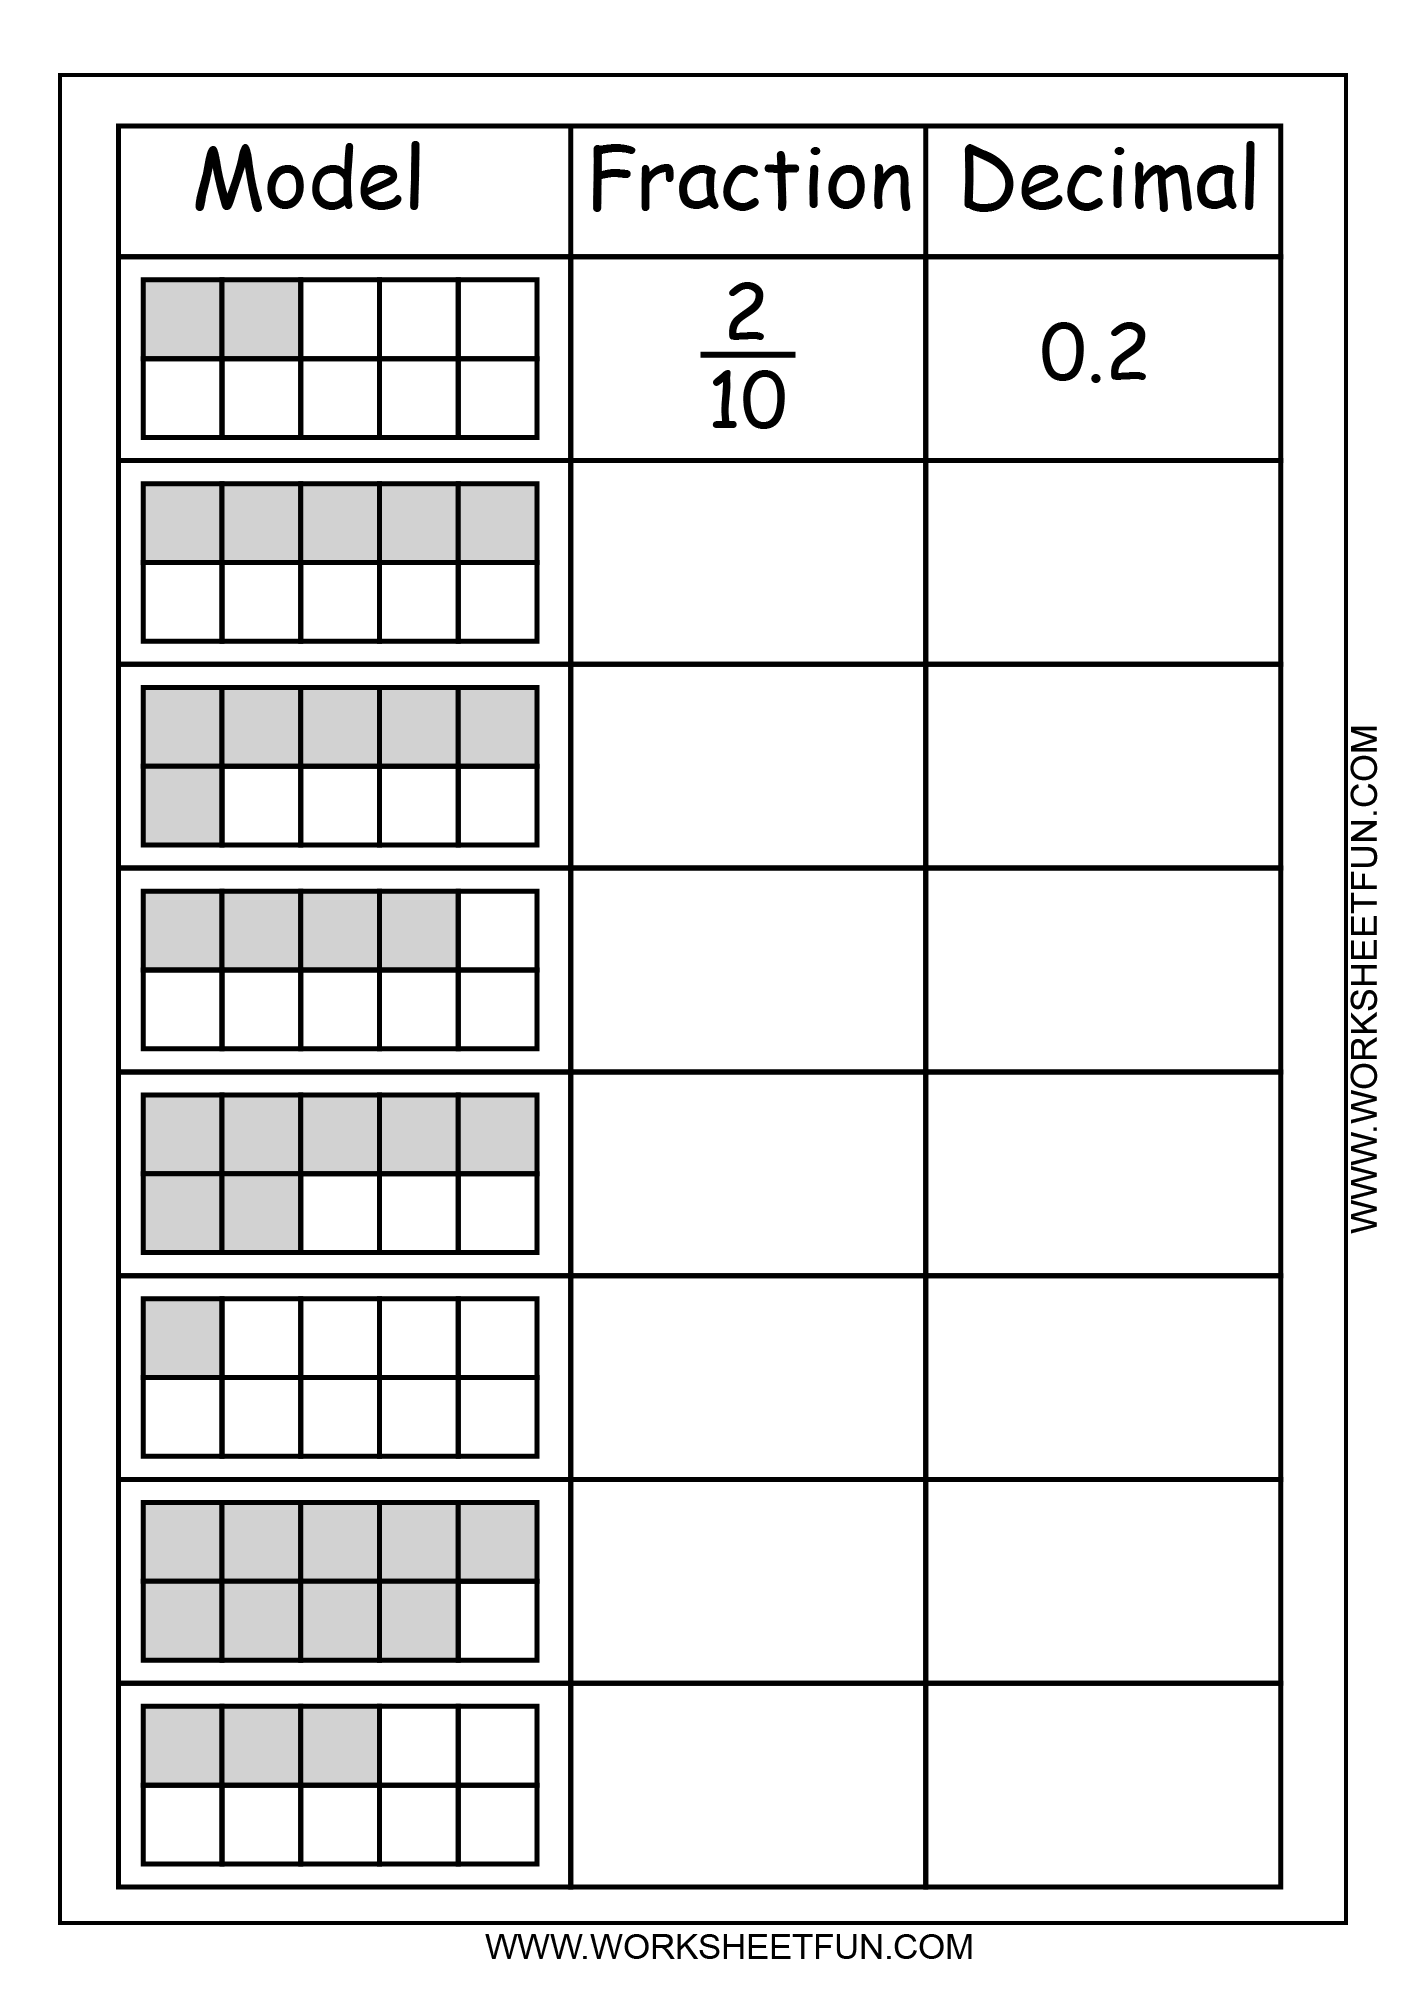 model-fraction-decimal-2-worksheets-free-printable-worksheets